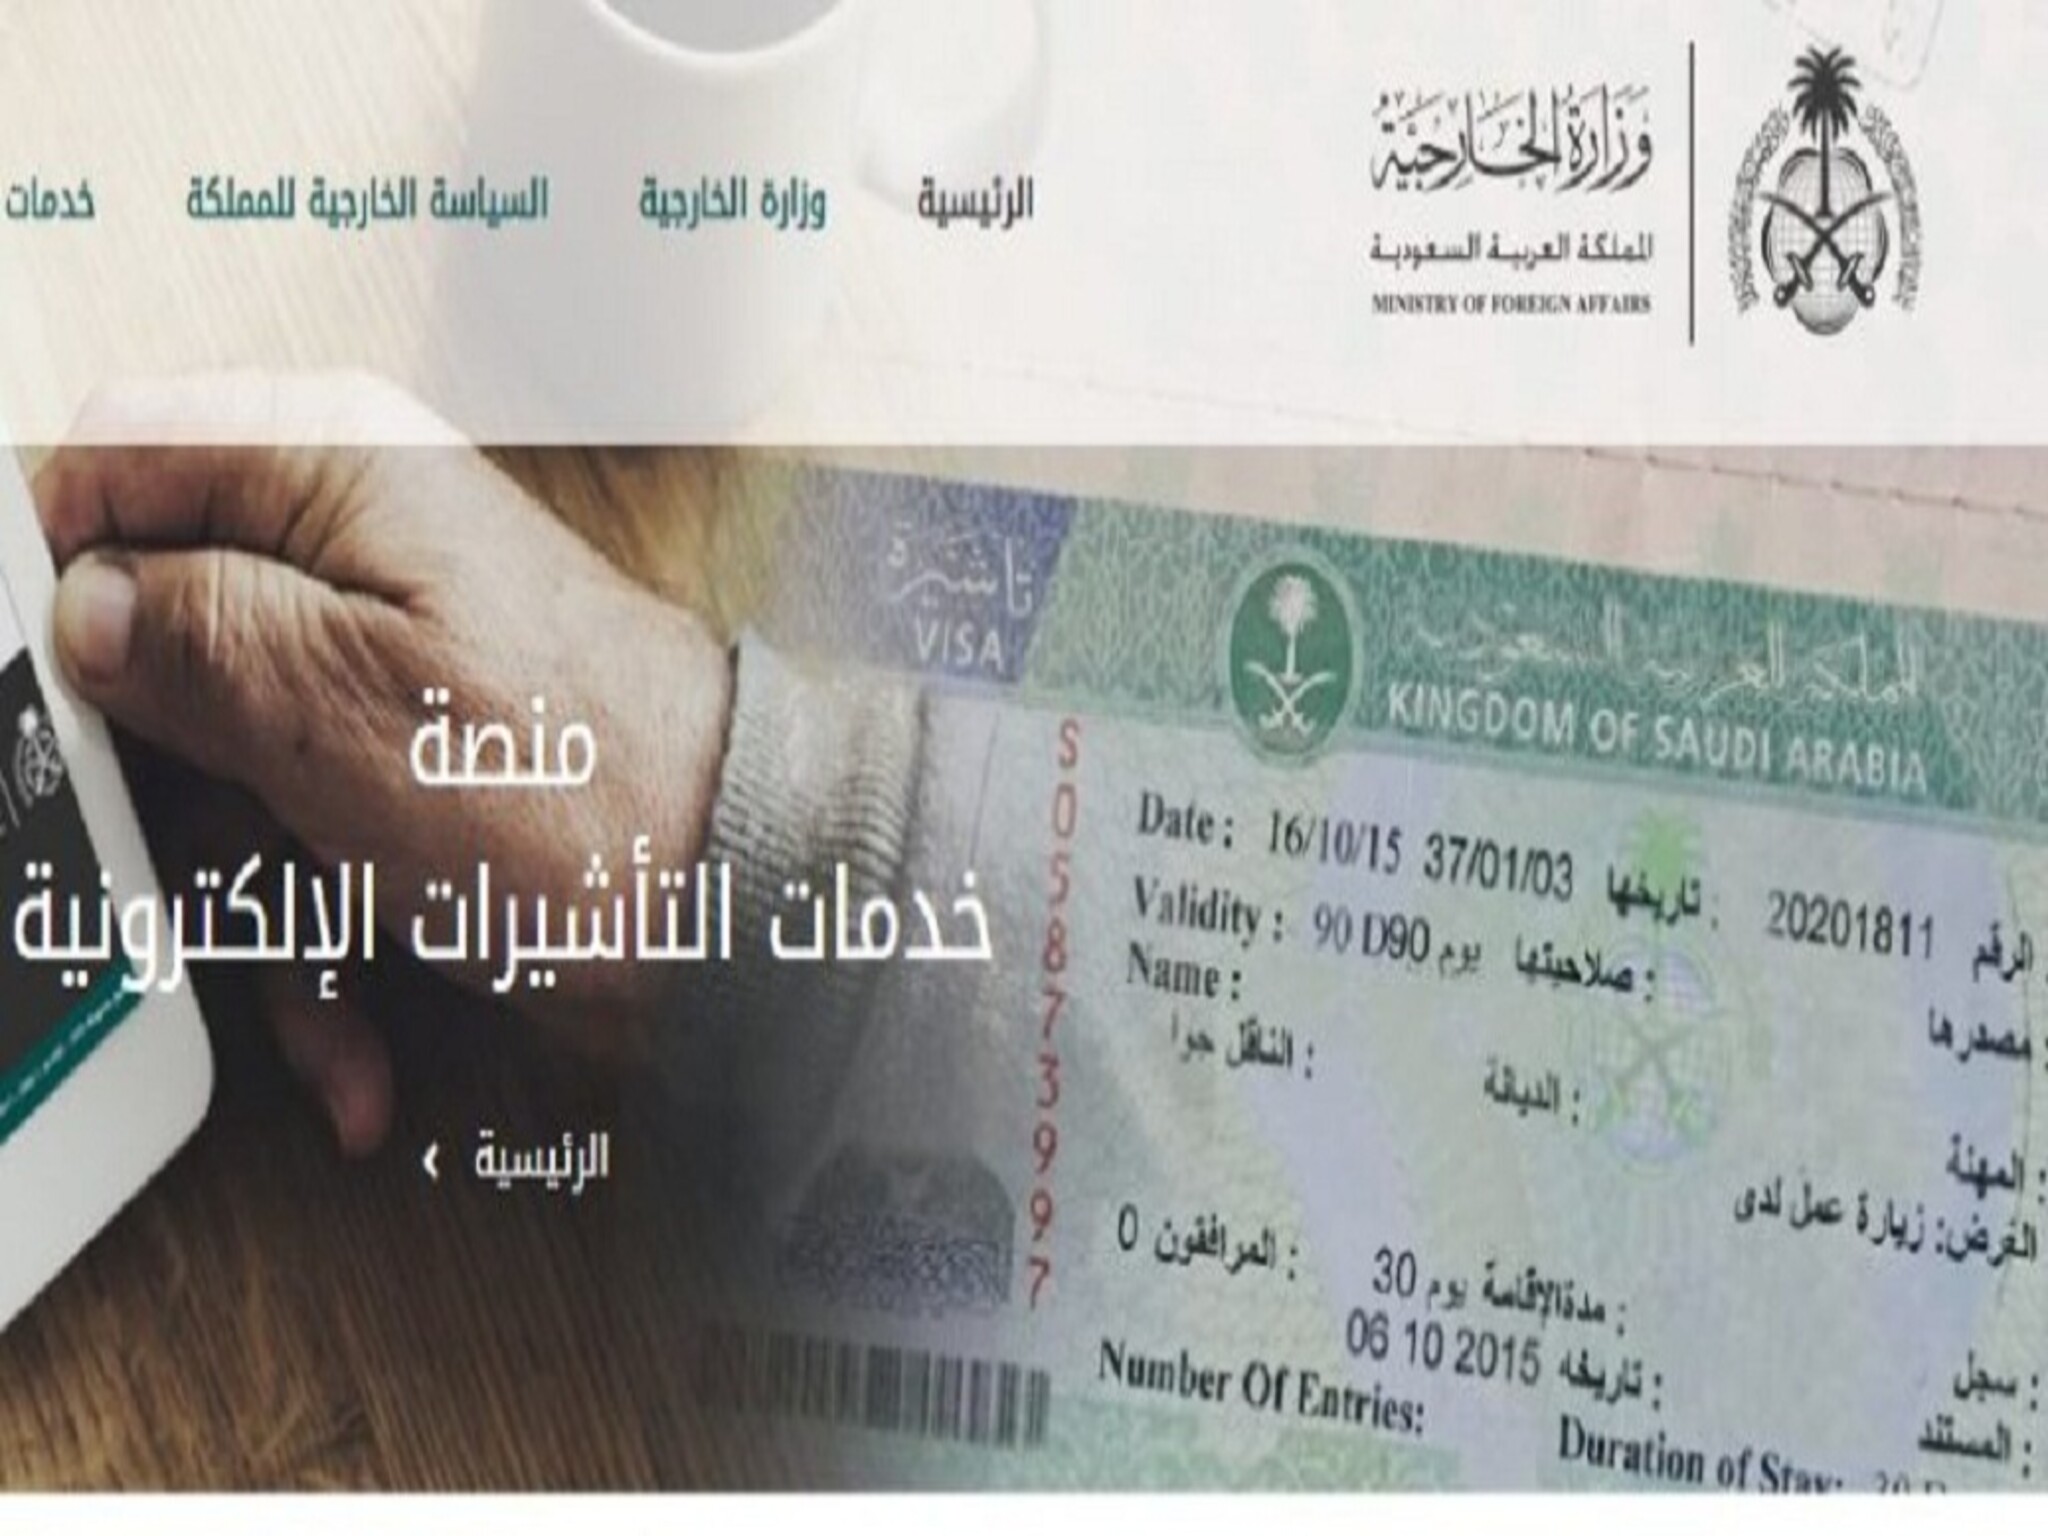 الإستعلام عن خدمة "مستند تأشيرة" عبر منصة التأشيرات الإلكترونية 1445هـ